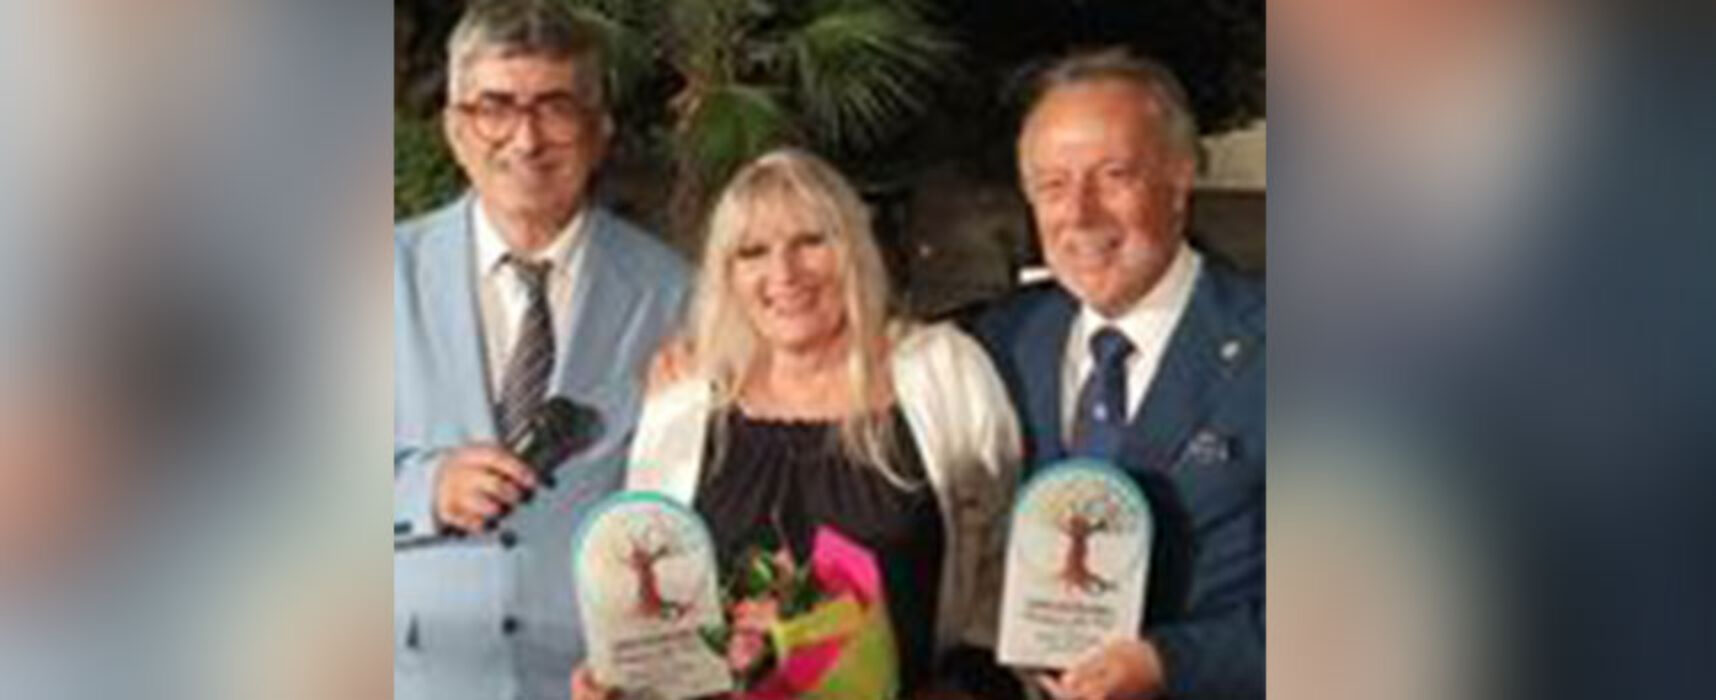 Premio Internazionale “Omaggio alla Vita”, tra i premiati la biscegliese Pina Catino